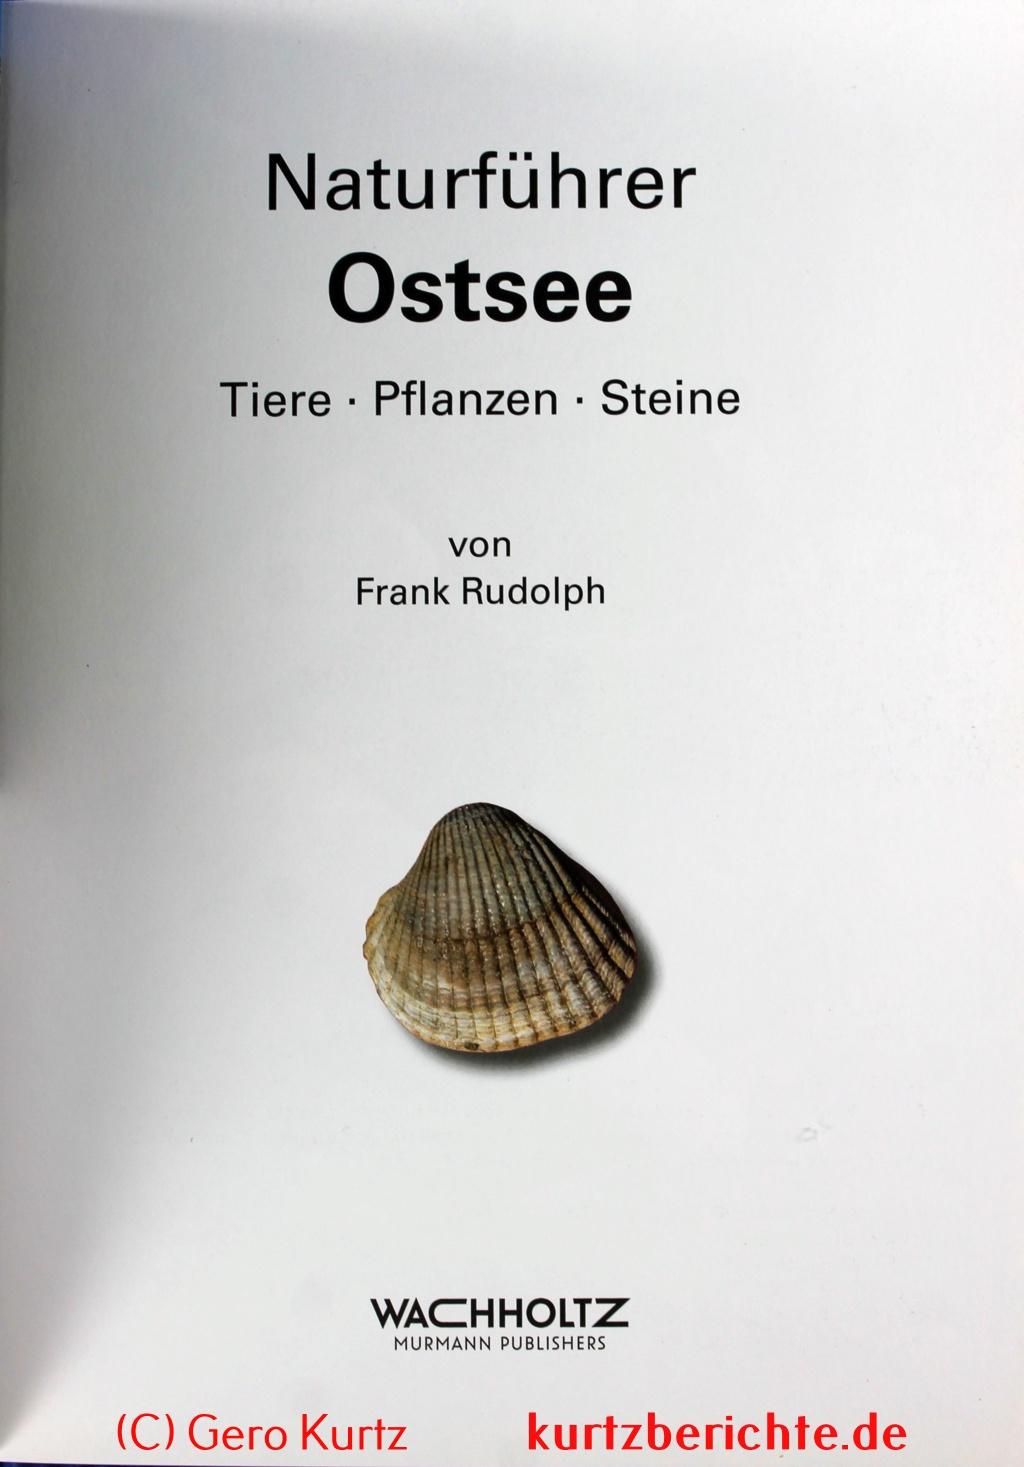 Naturführer Ostsee" von Frank Rudolph - erste Seite des Buches 